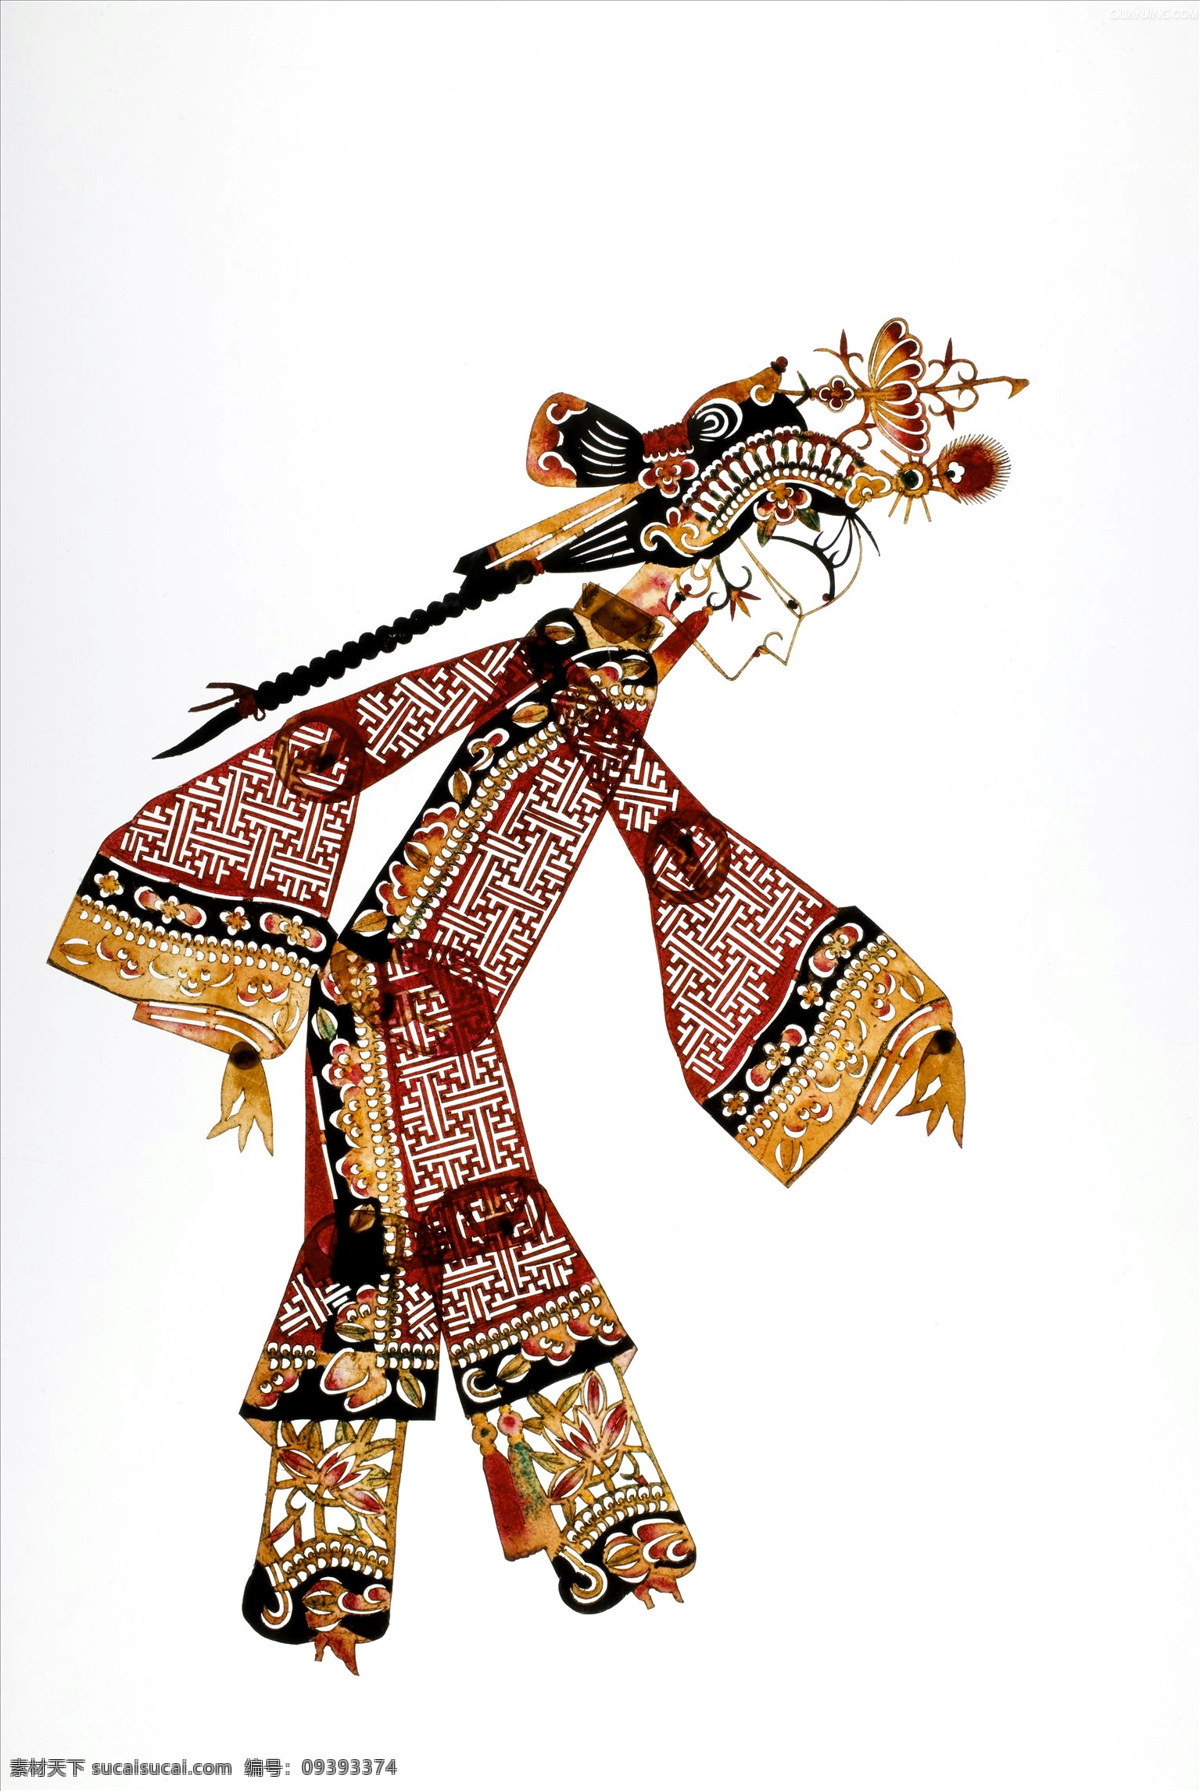 皮影 文化艺术 民间艺术 皮影戏 中国传统文化 灯影戏 艺术瑰宝